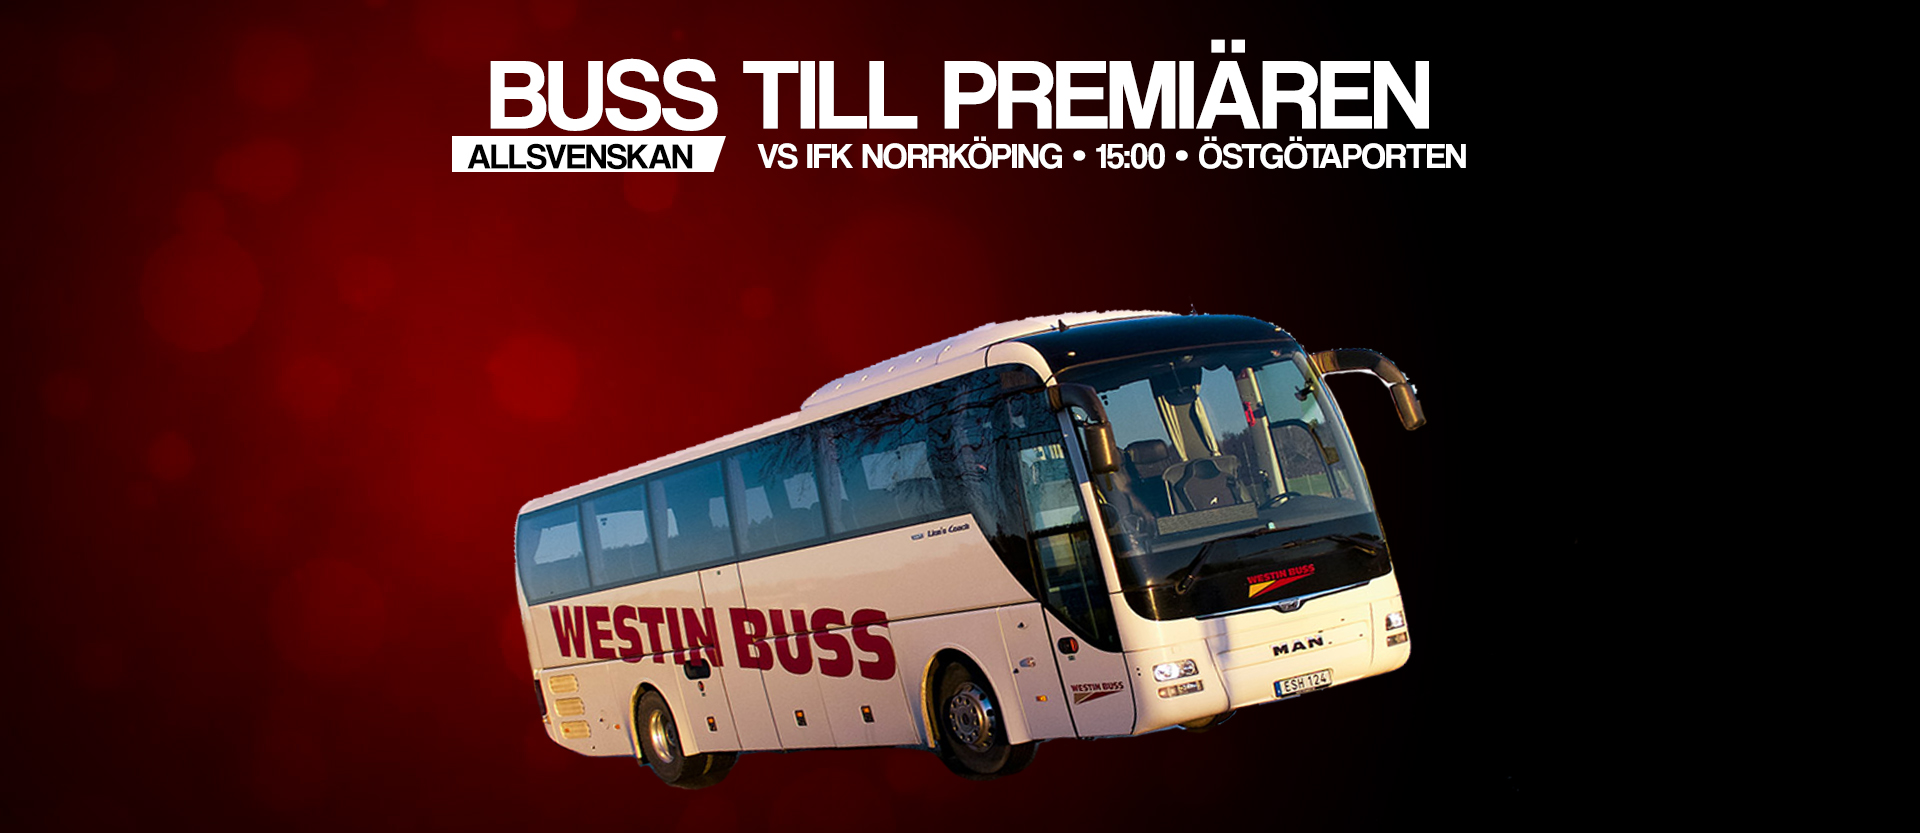 Åk med Westin Buss till den allsvenska premiären